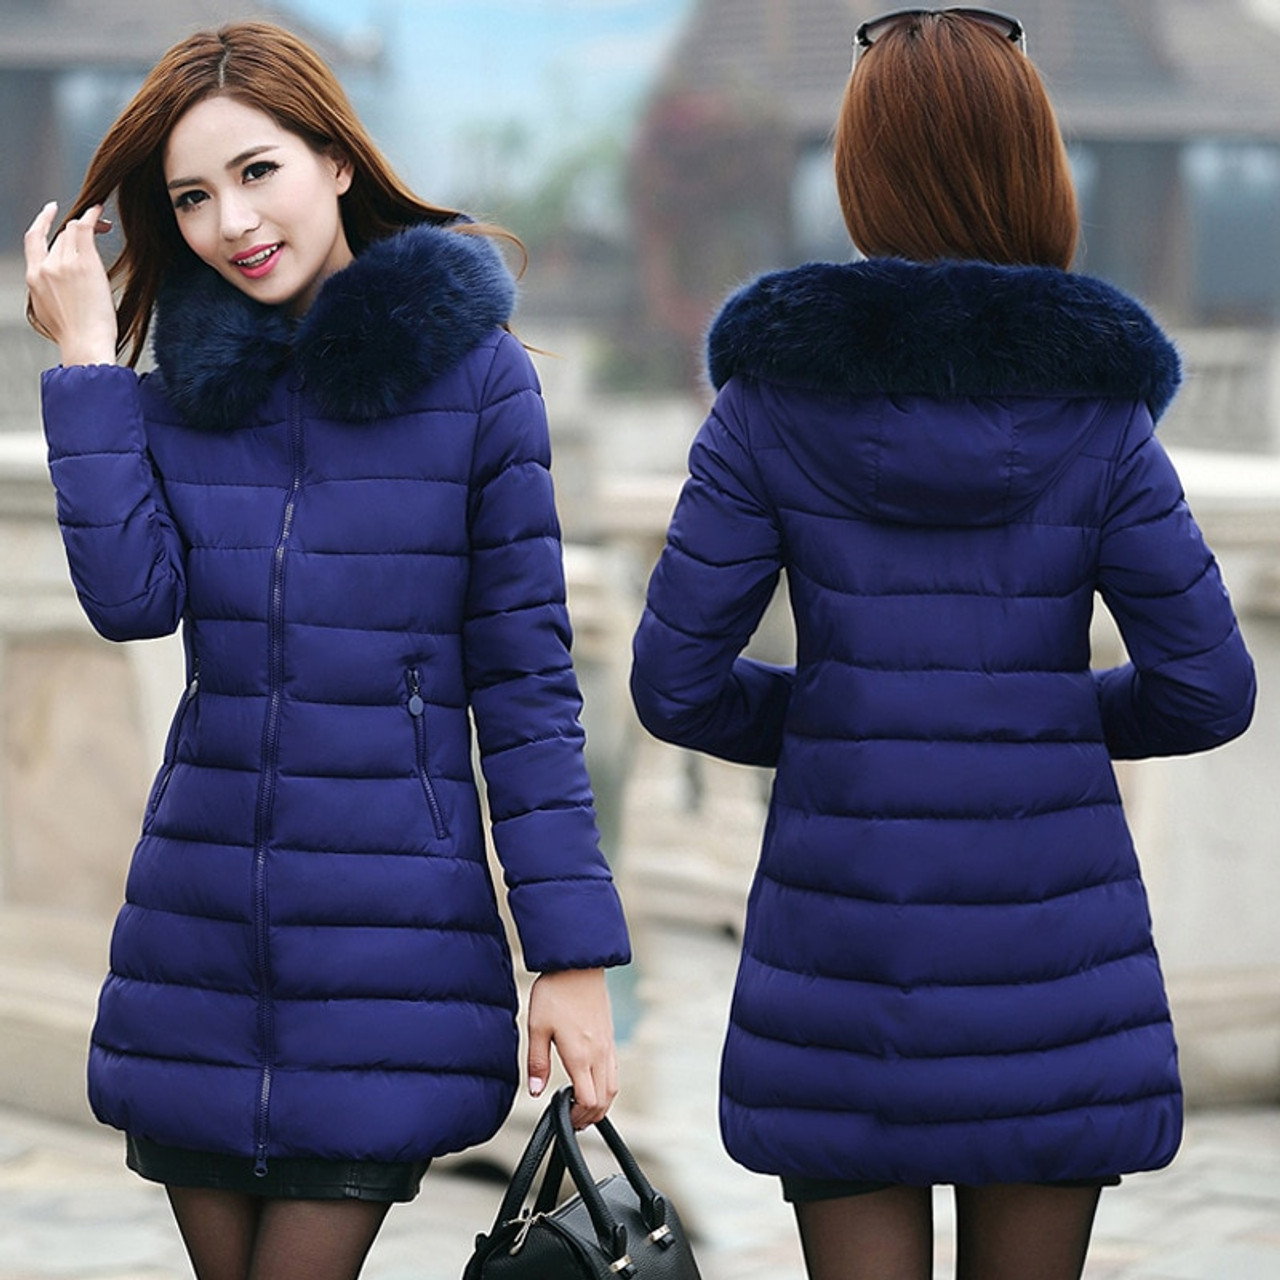 New Women Winter Woolen Trench Coat Lapel Long Jacket Blazer Suit Slim  Overcoat | eBay